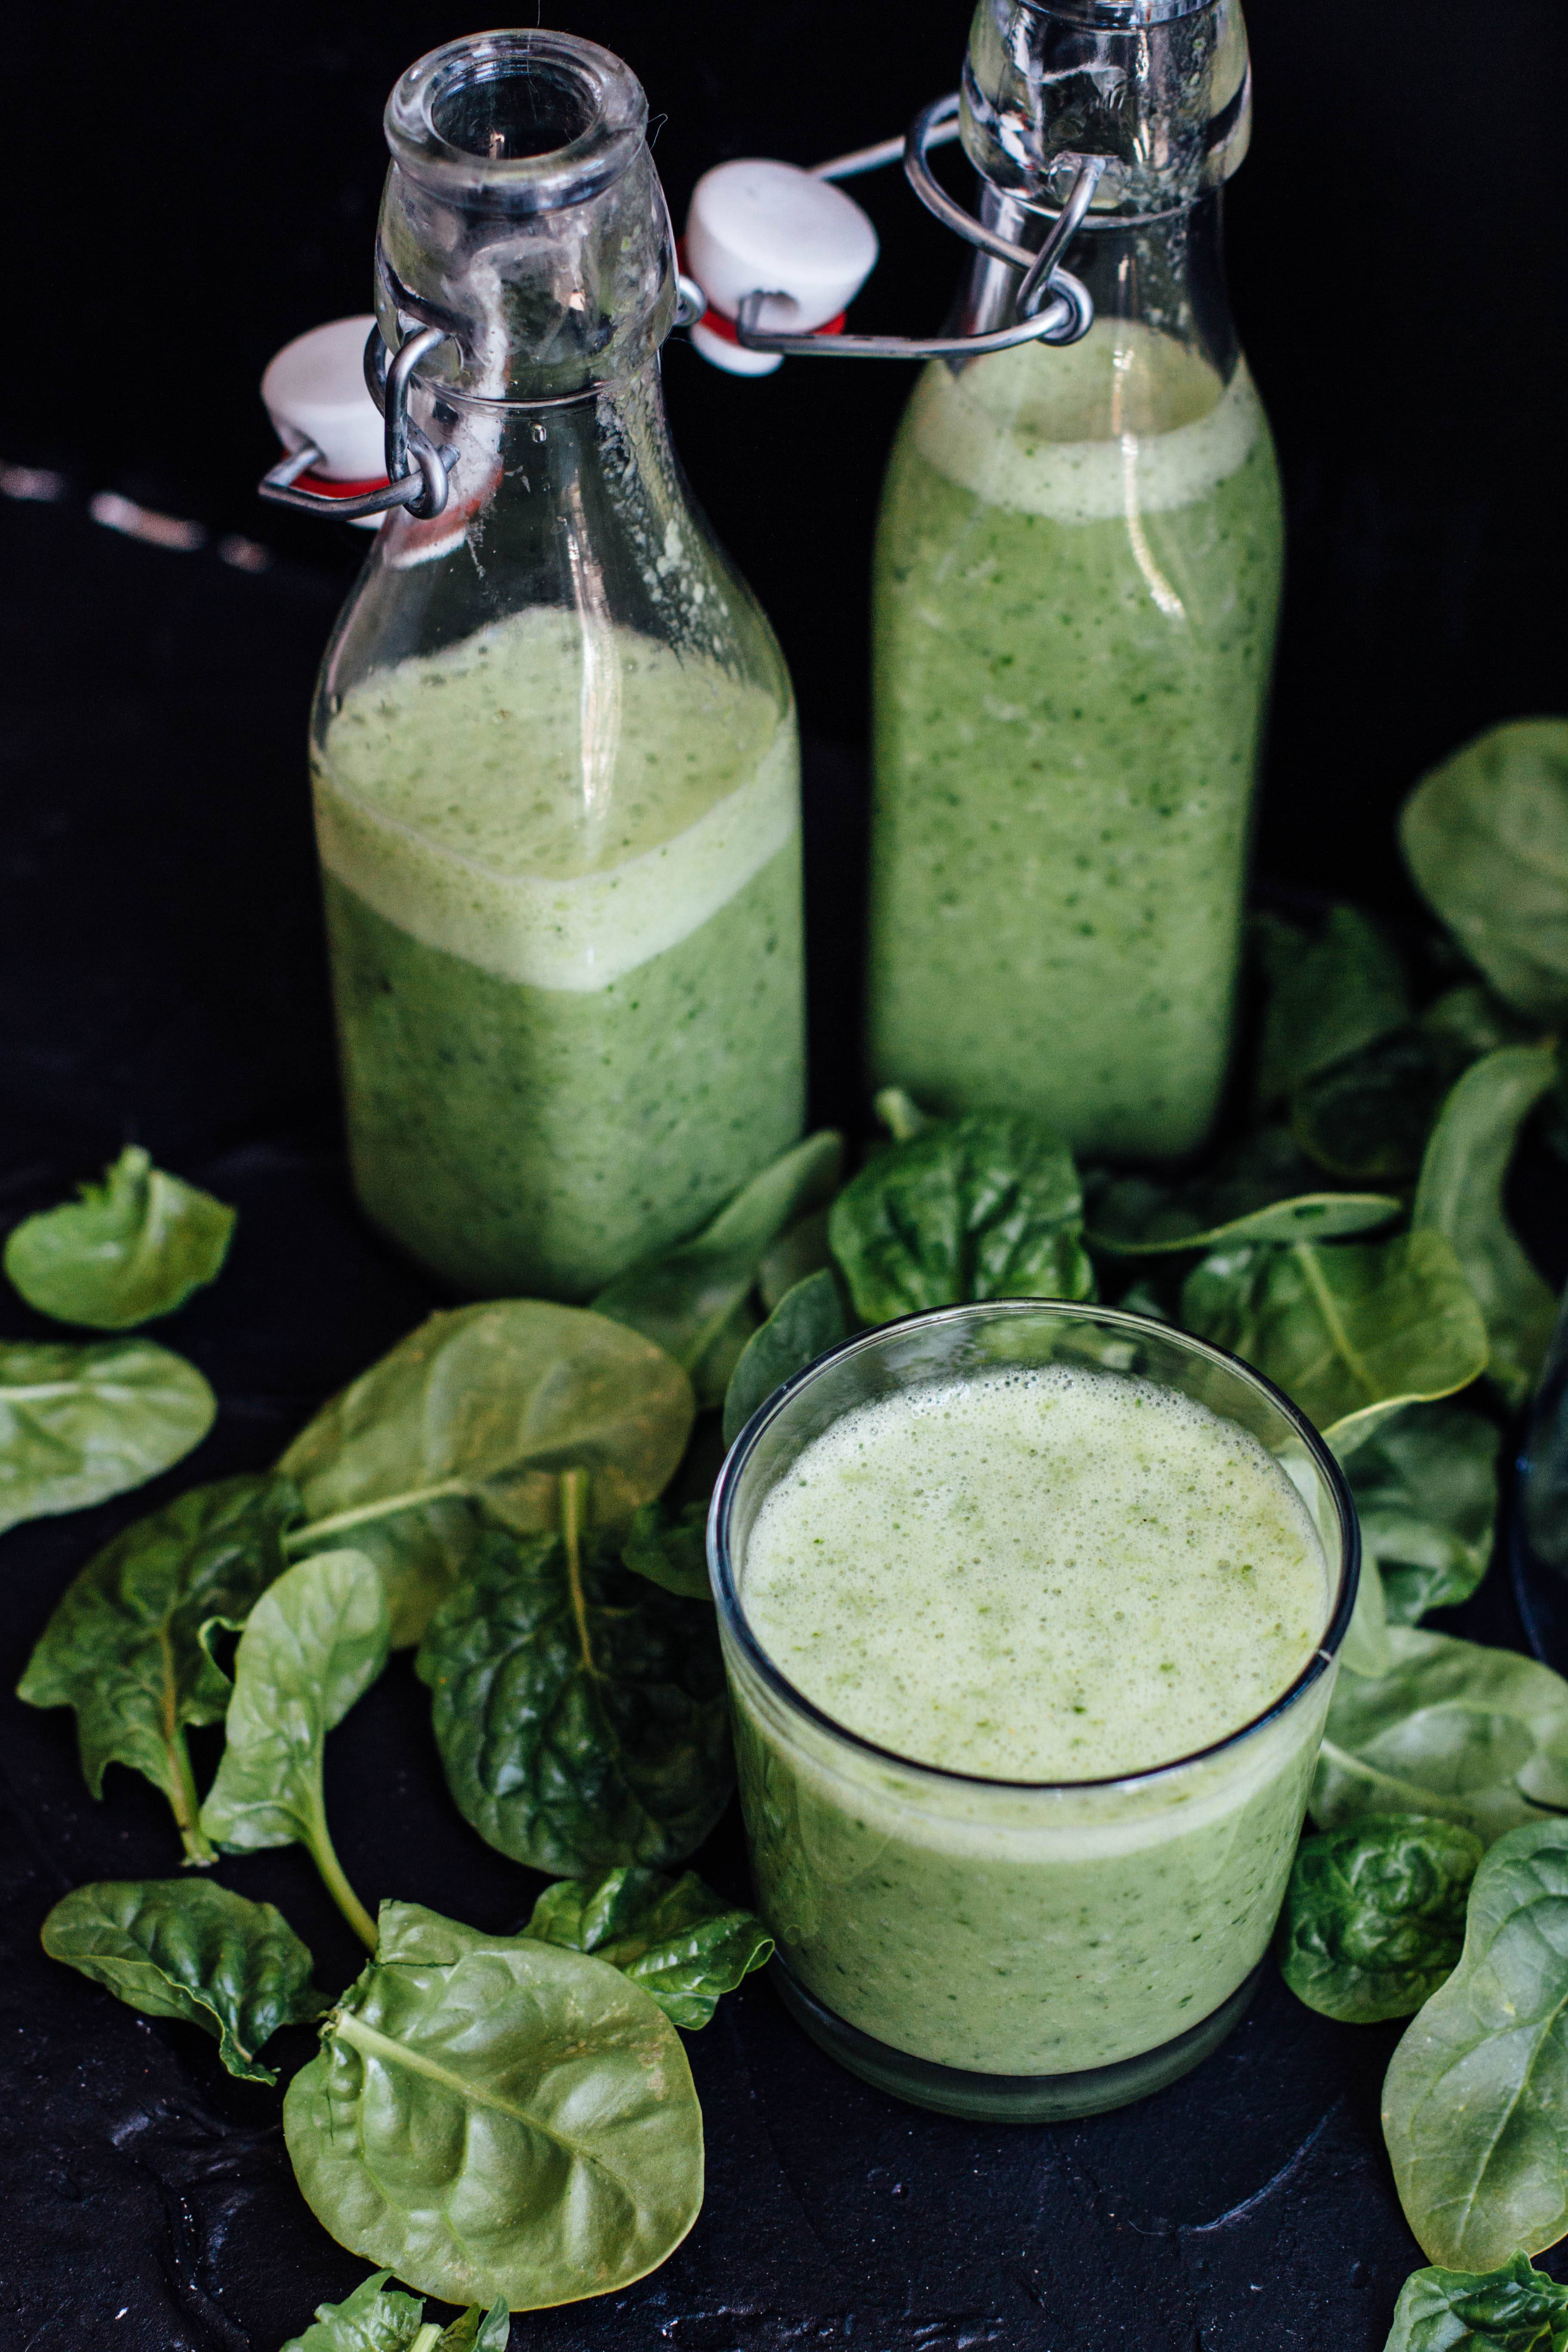 Польза смузи и сока из шпината – зелёный коктейль для вашего здоровья - смузик - лучшие рецепты смузи